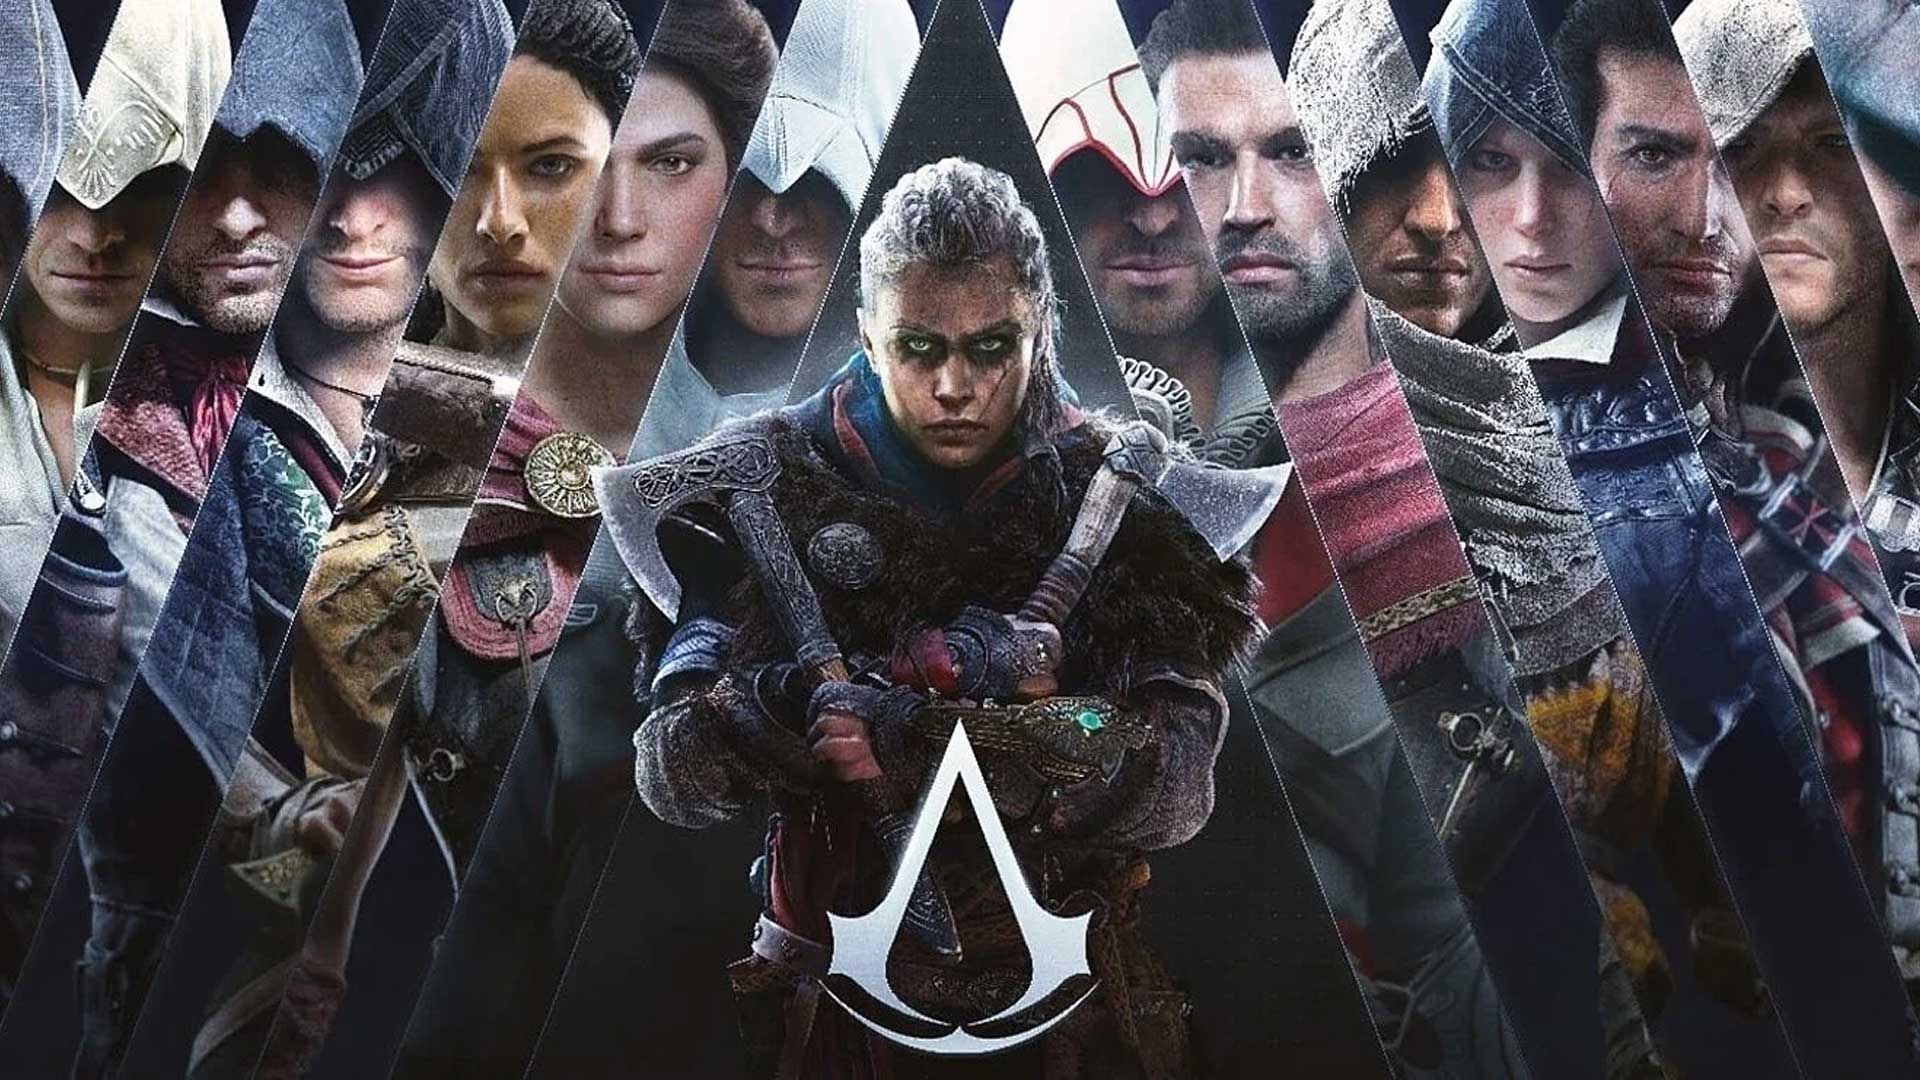 بازی Assassin’s Creed Infinity بخش داستانی با کیفیت خواهد داشت